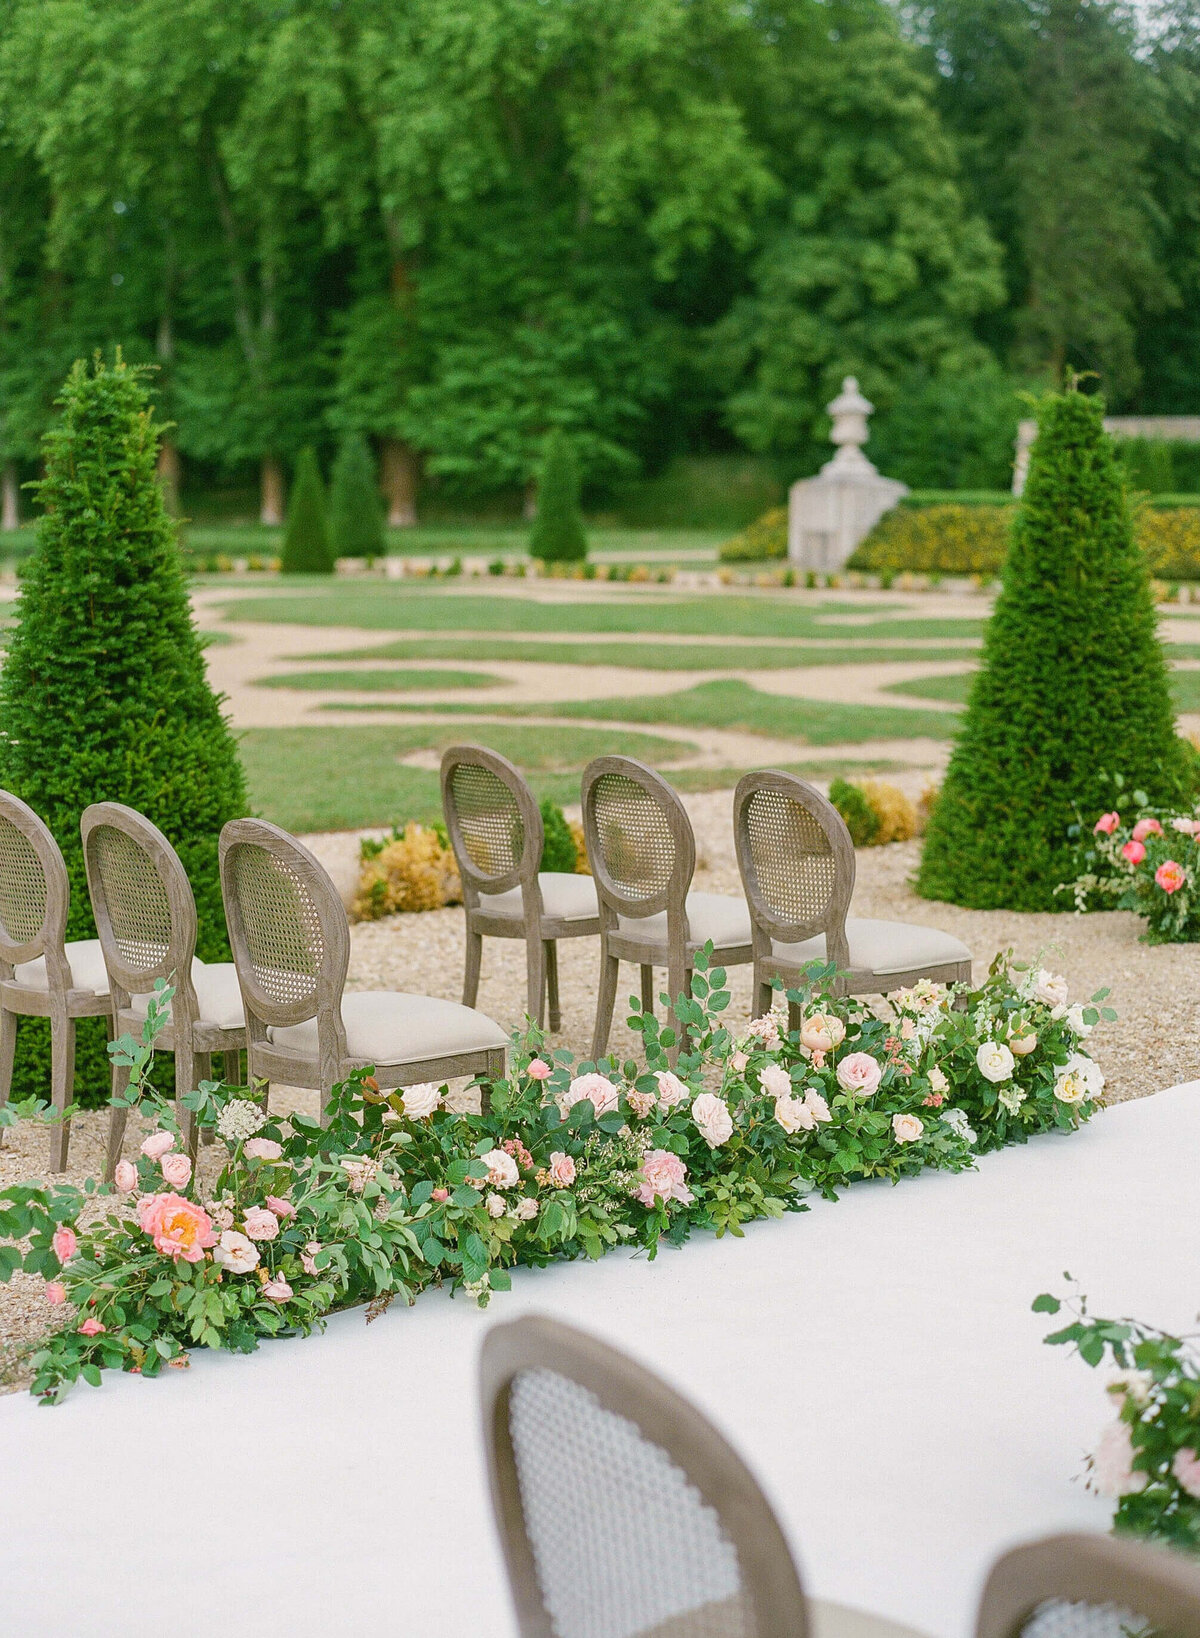 Chateau-de-Villette-wedding-florist-Floraison8